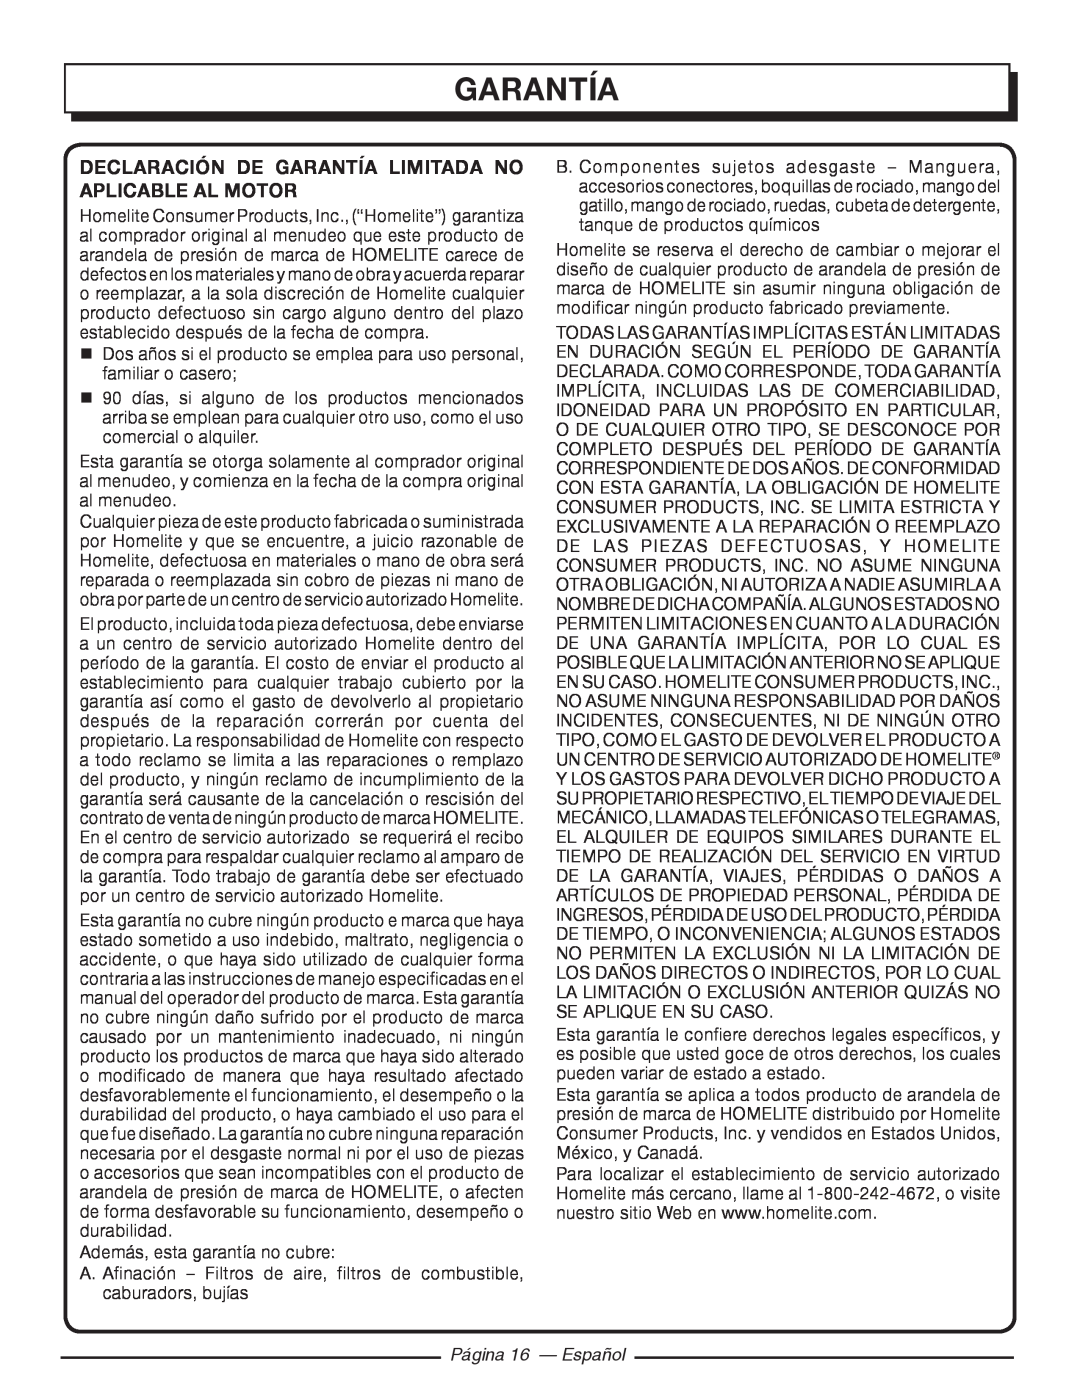 Homelite UT80953, UT80522 Declaración De Garantía Limitada No Aplicable Al Motor, Página 16 - Español 